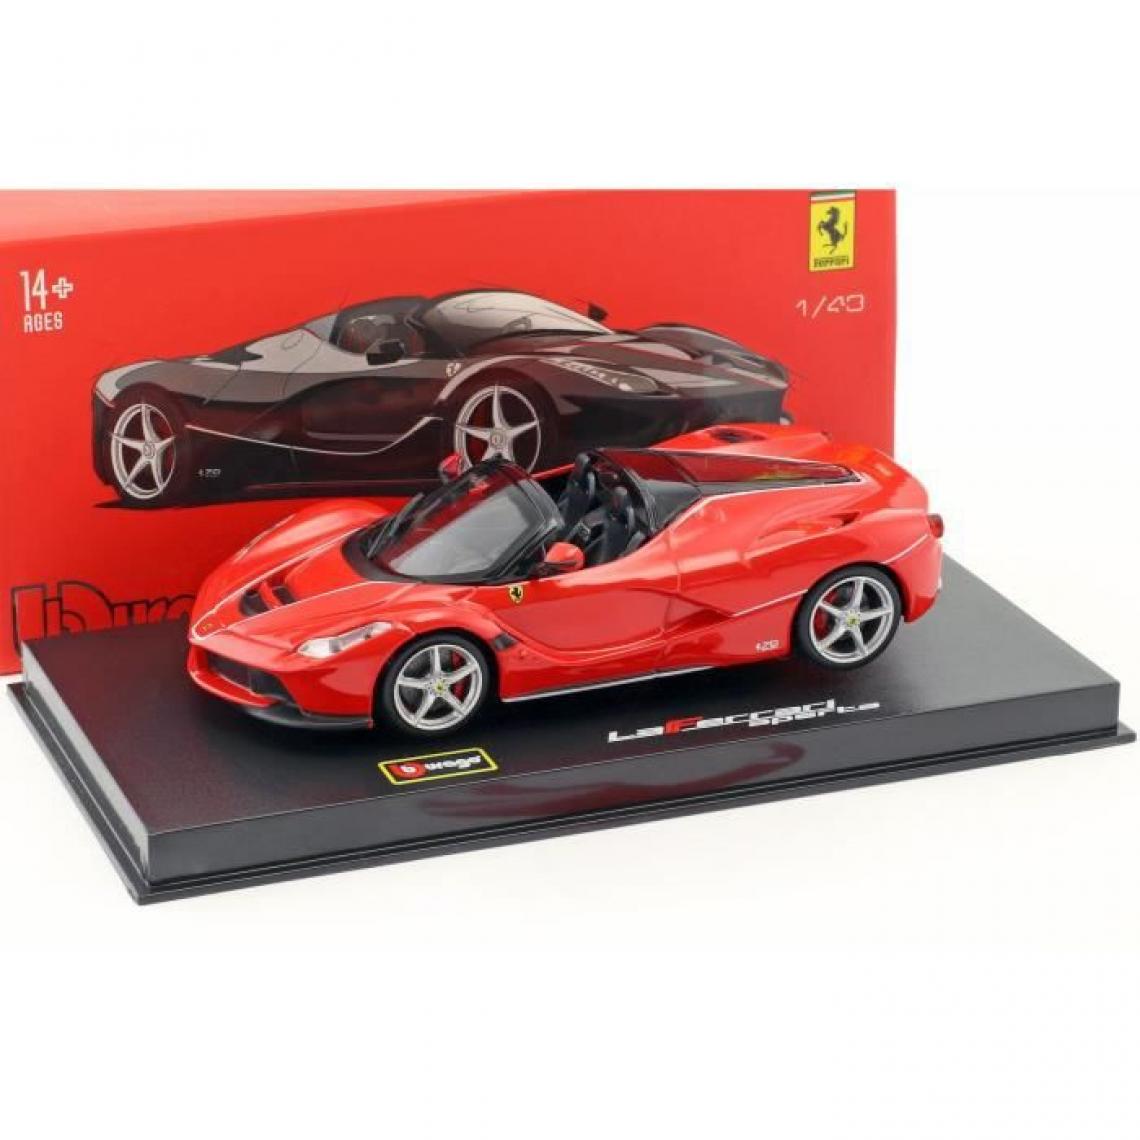 Bburago - BBURAGO Voiture Ferrari Signature Aperta Rouge en métal a l'échelle 1/43eme - Voitures